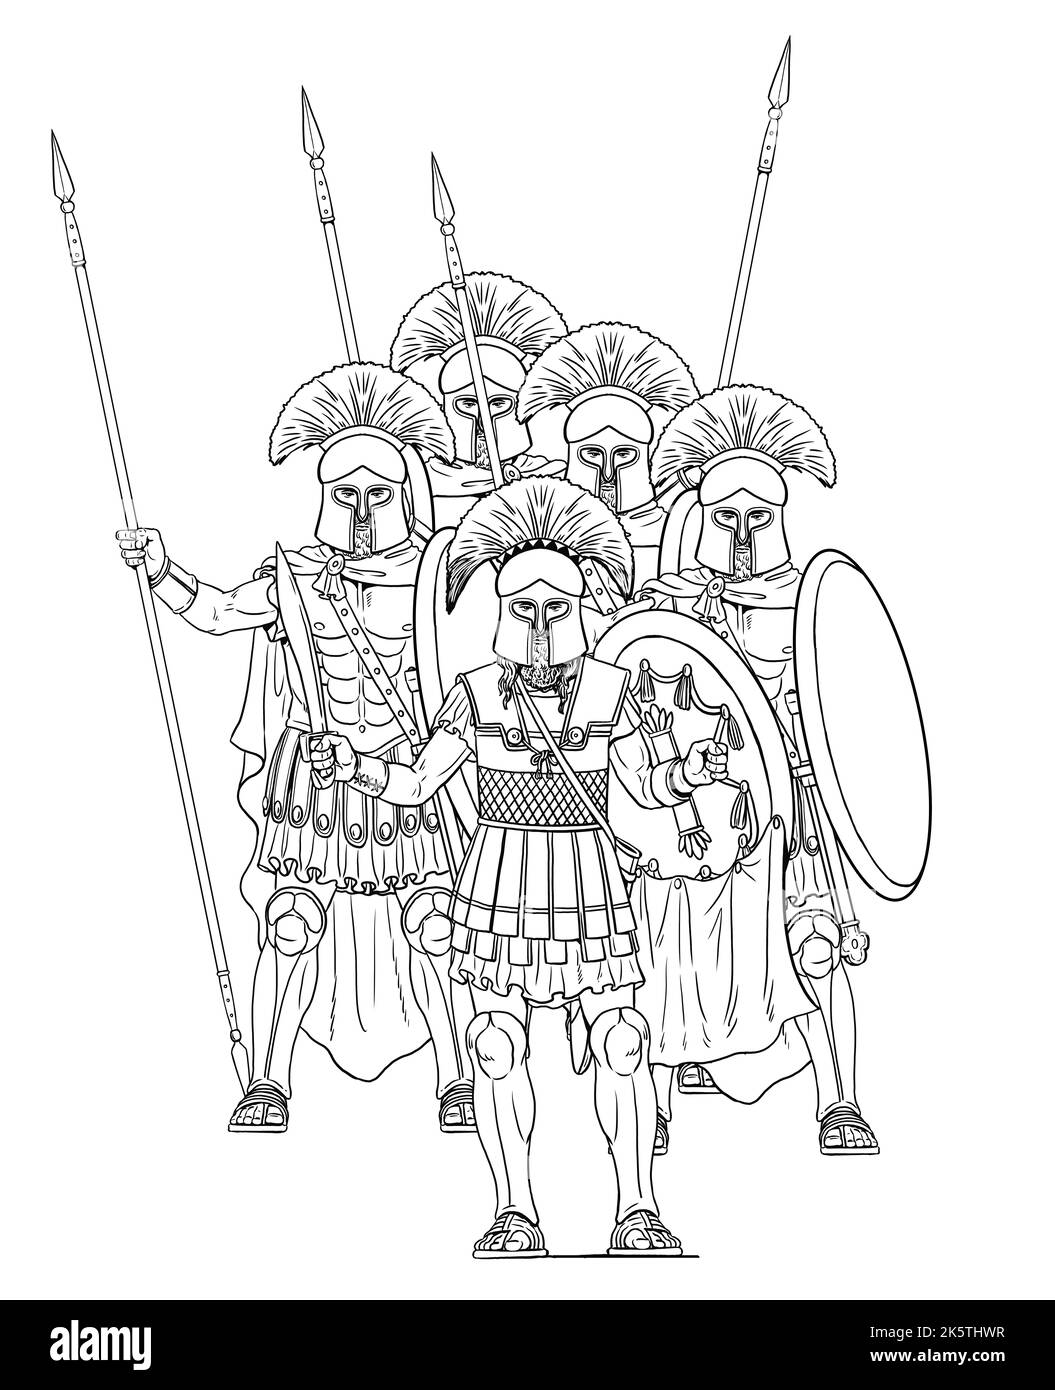 Le roi Léonidas et ses spartiates. Guerriers anciens. Dessin avec des hoplites grecs. Banque D'Images